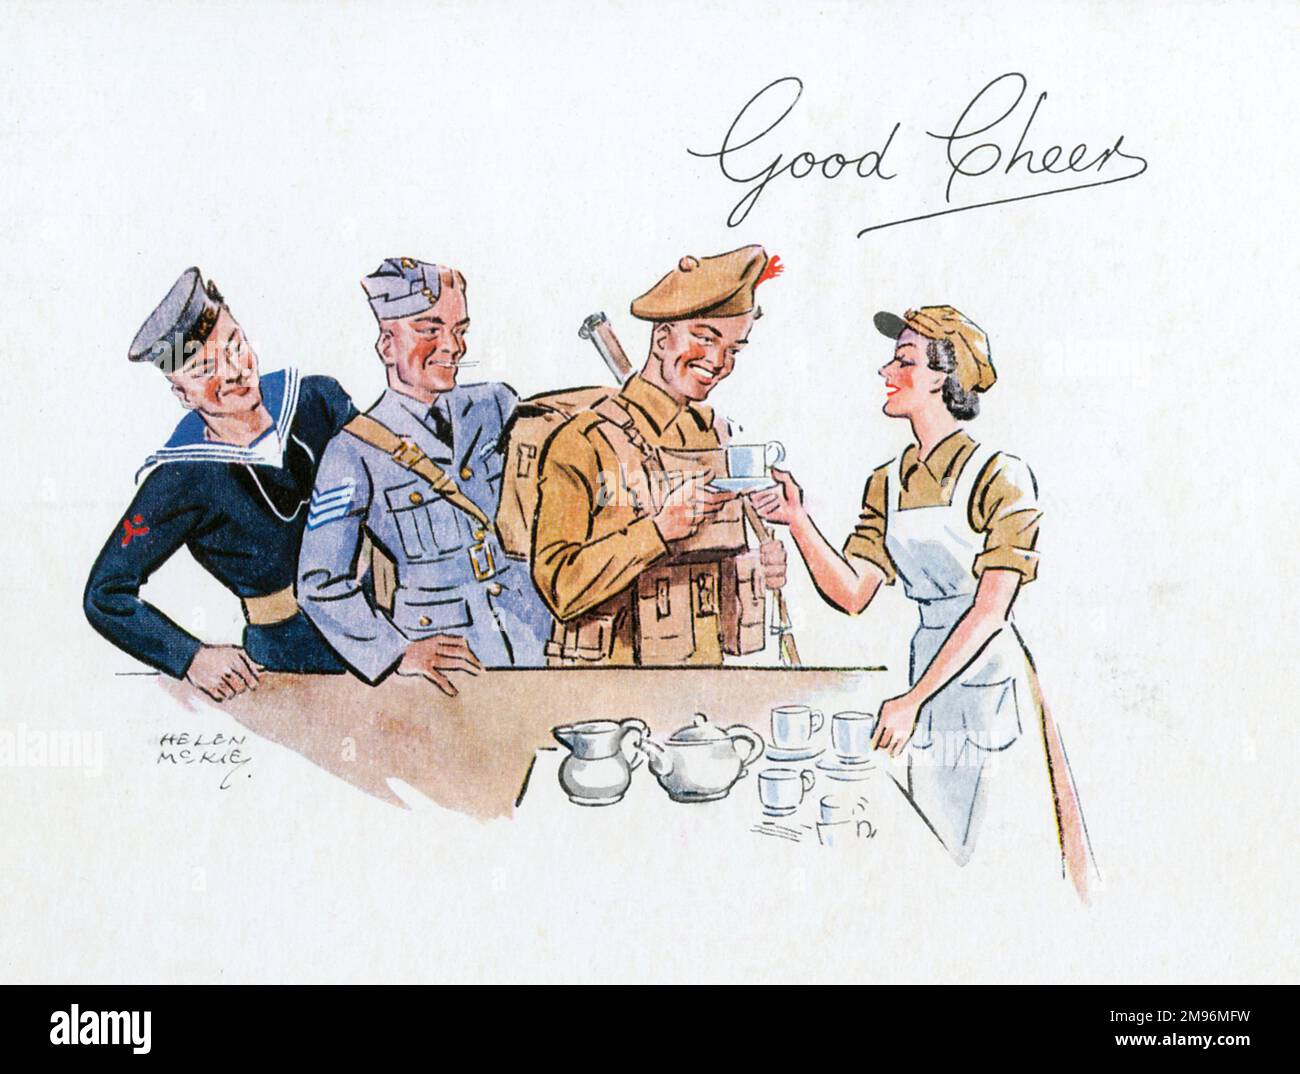 Illustration Jolly par Helen Mckie montrant une travailleuse ATS servant des tasses de thé à un marin, un aviateur et un soldat pendant la Seconde Guerre mondiale Banque D'Images